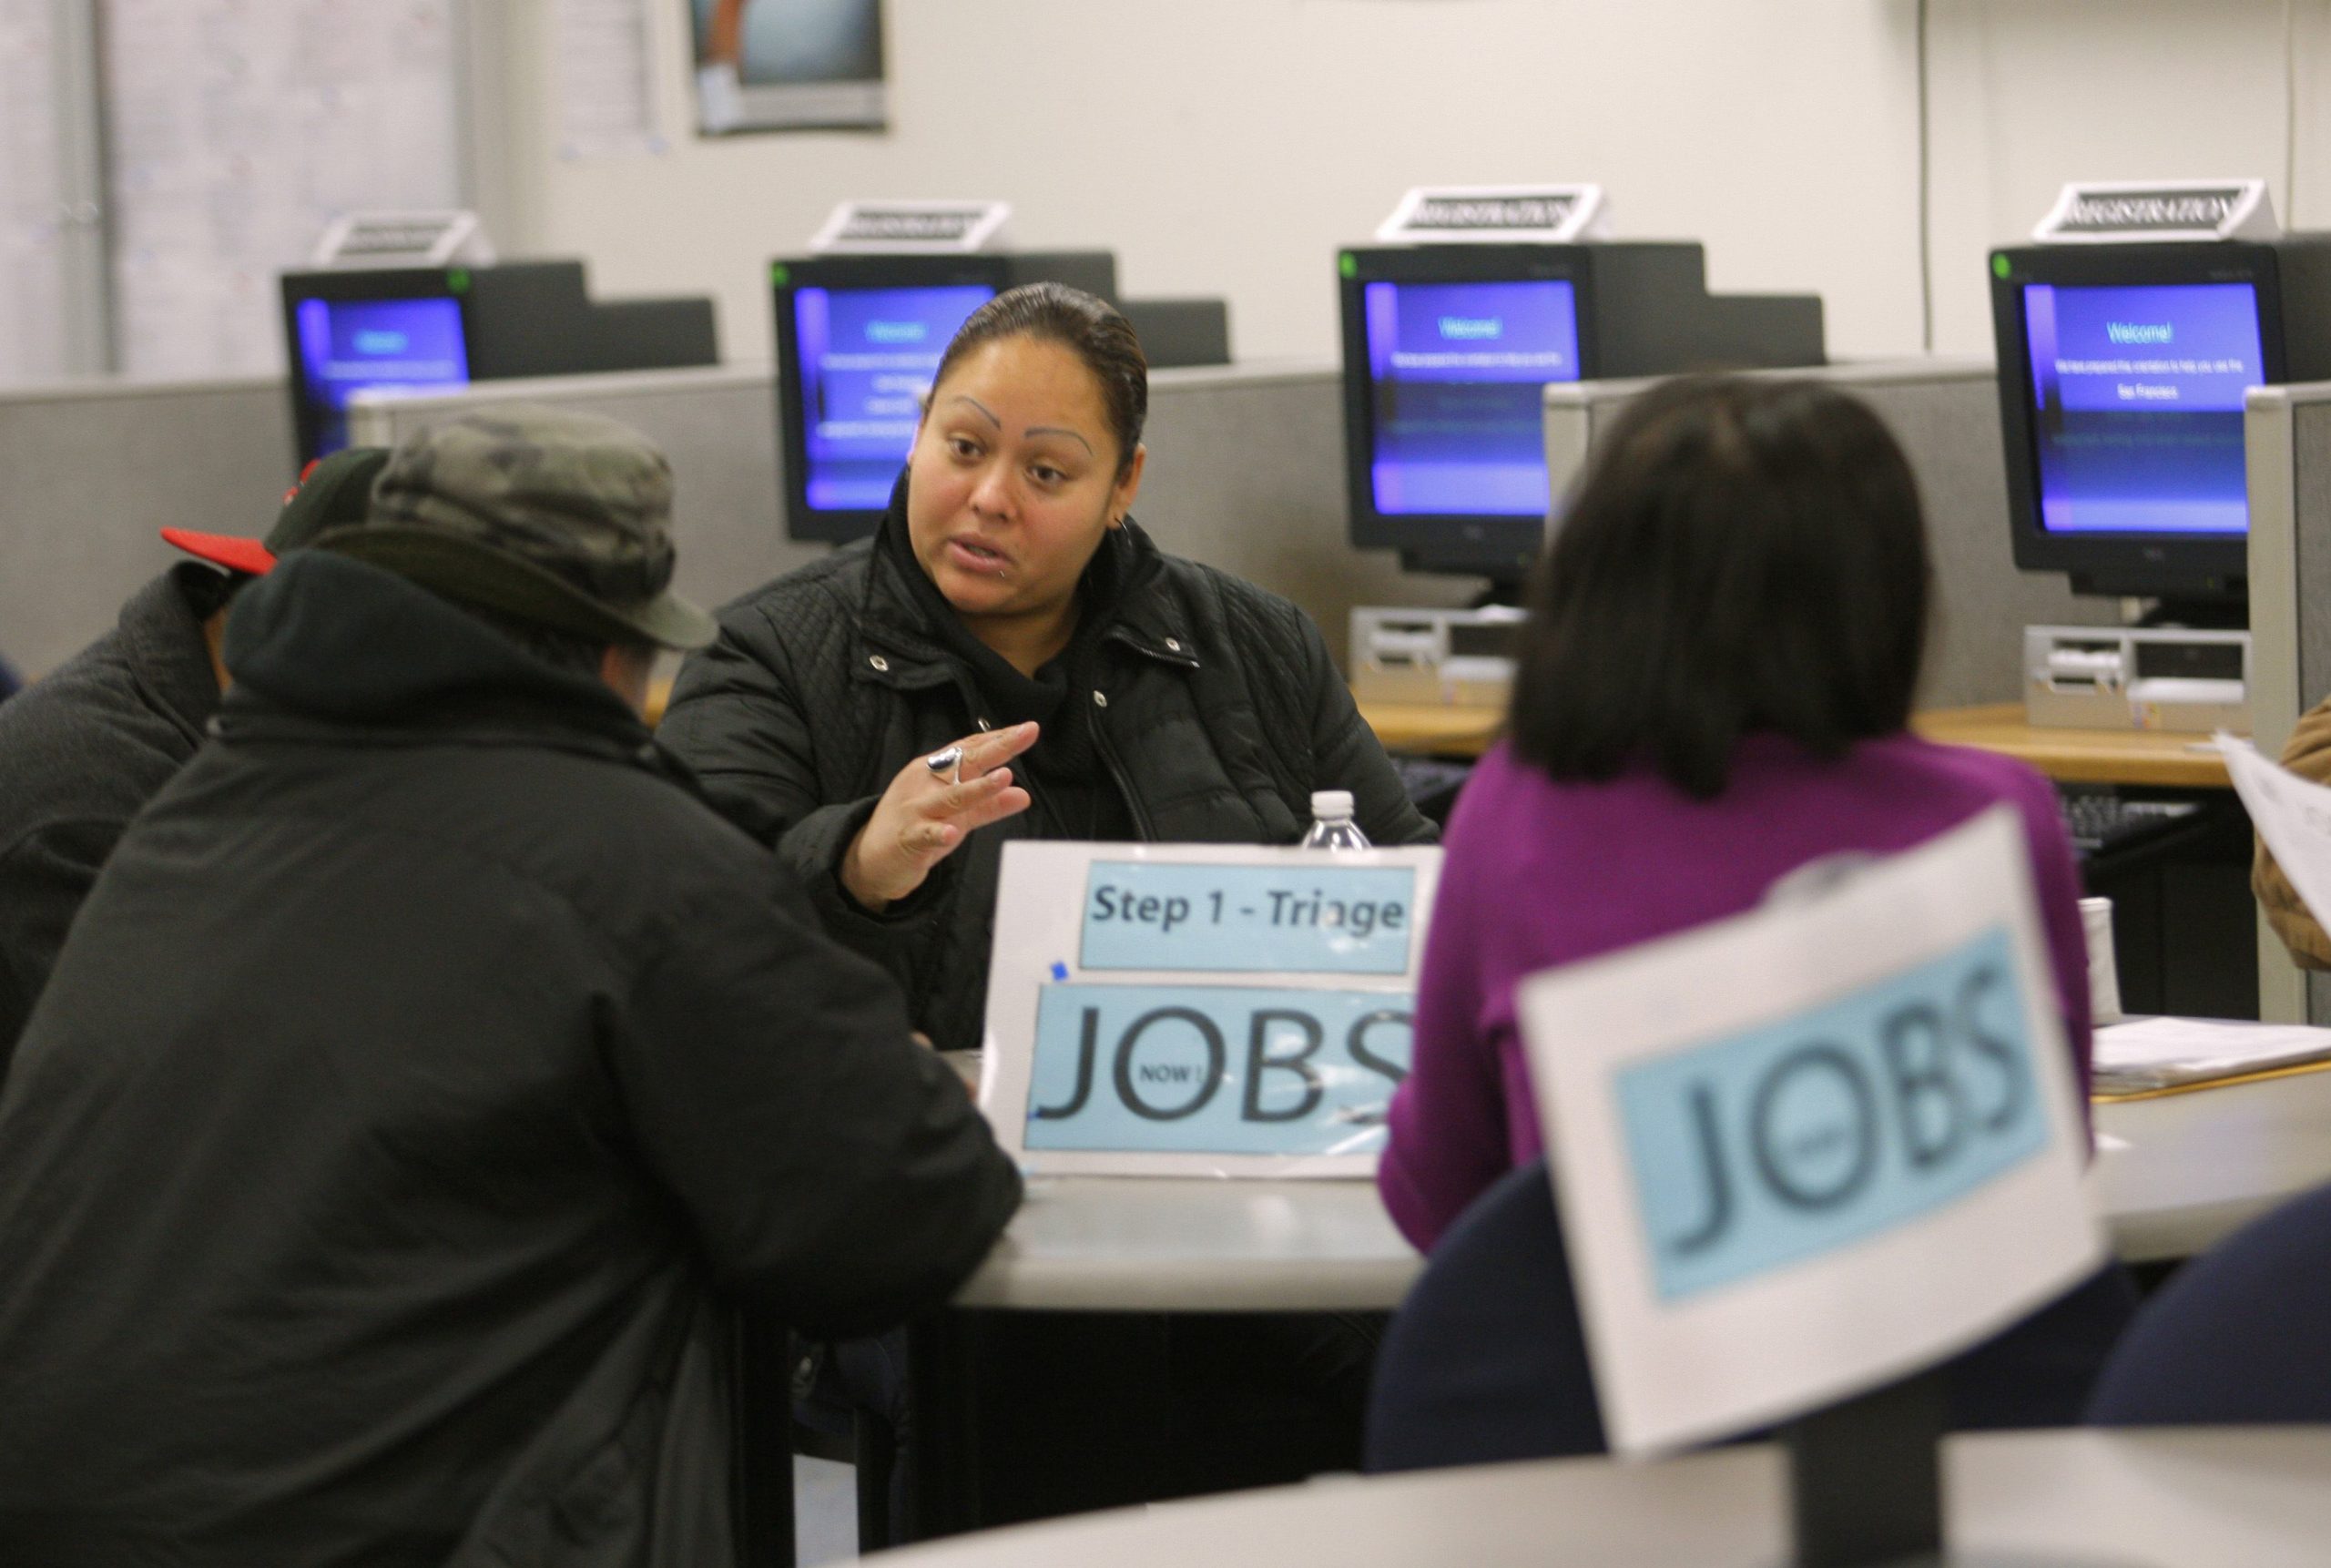 ΗΠΑ: Επιβραδύνθηκε η αγορά εργασίας στις ΗΠΑ